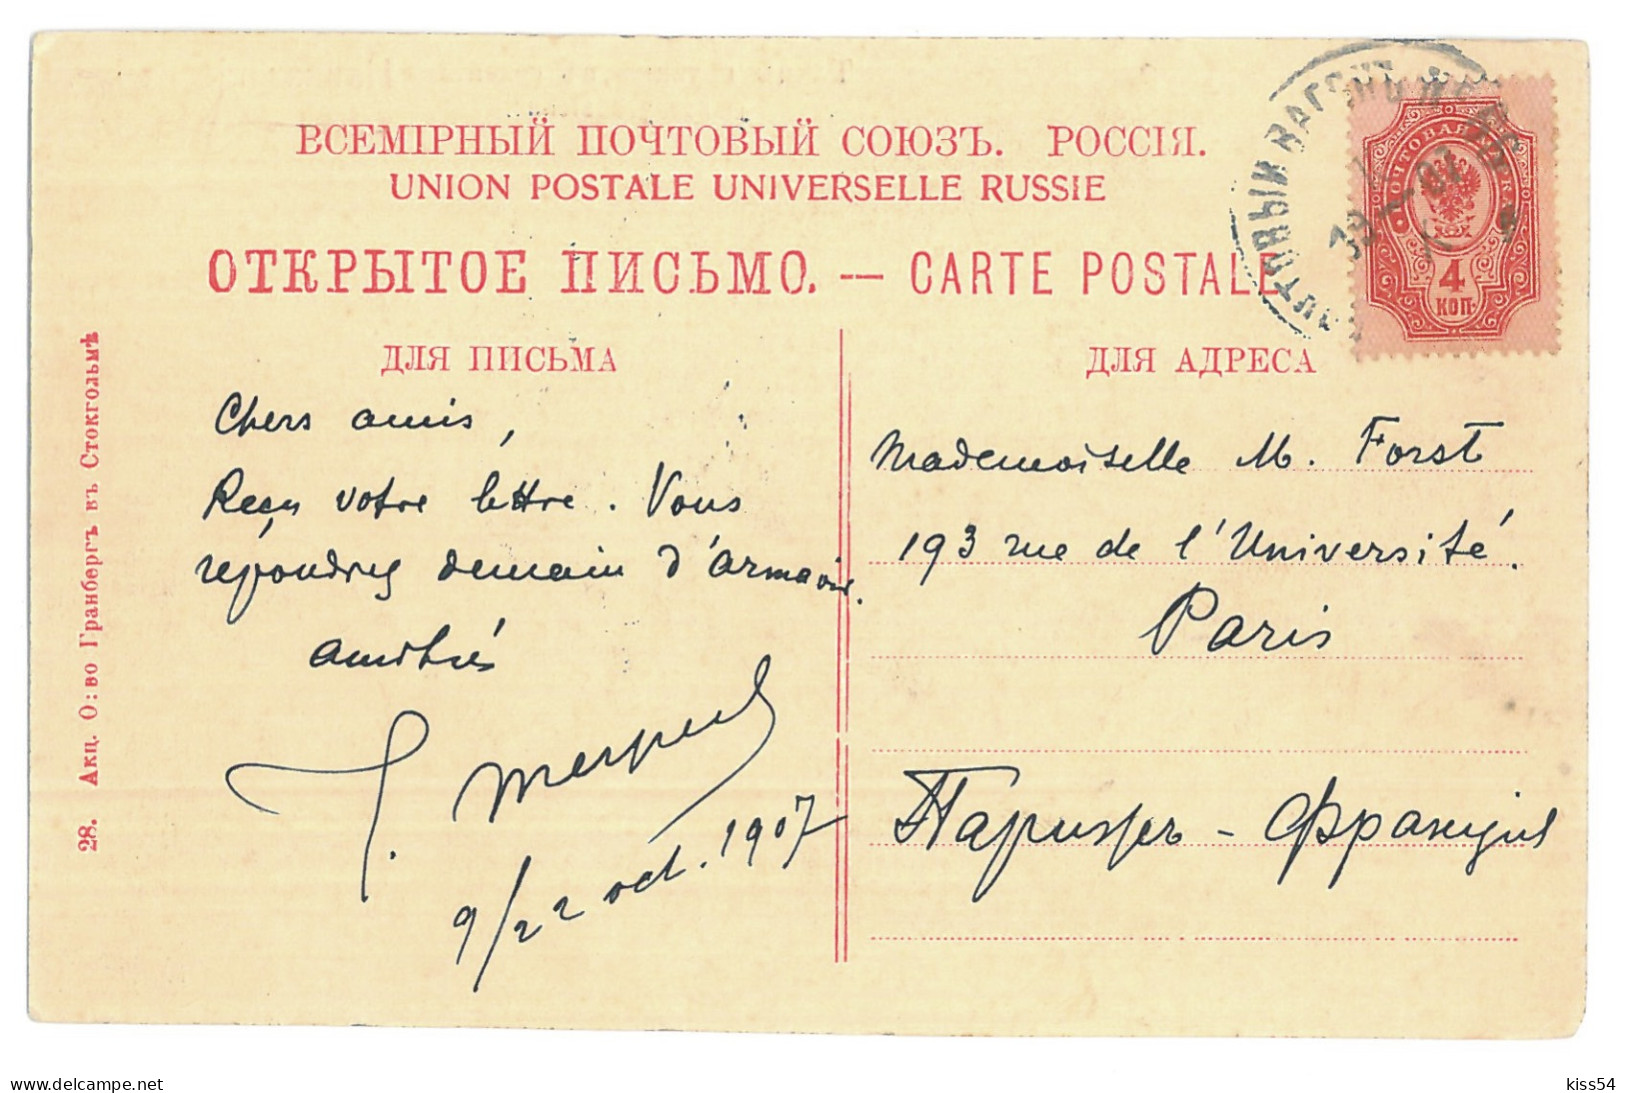 RUS 998 - 15453 ETHNICS Georgians In The Caucasus, Russia - Old Postcard - Used - 1907 - Rusland